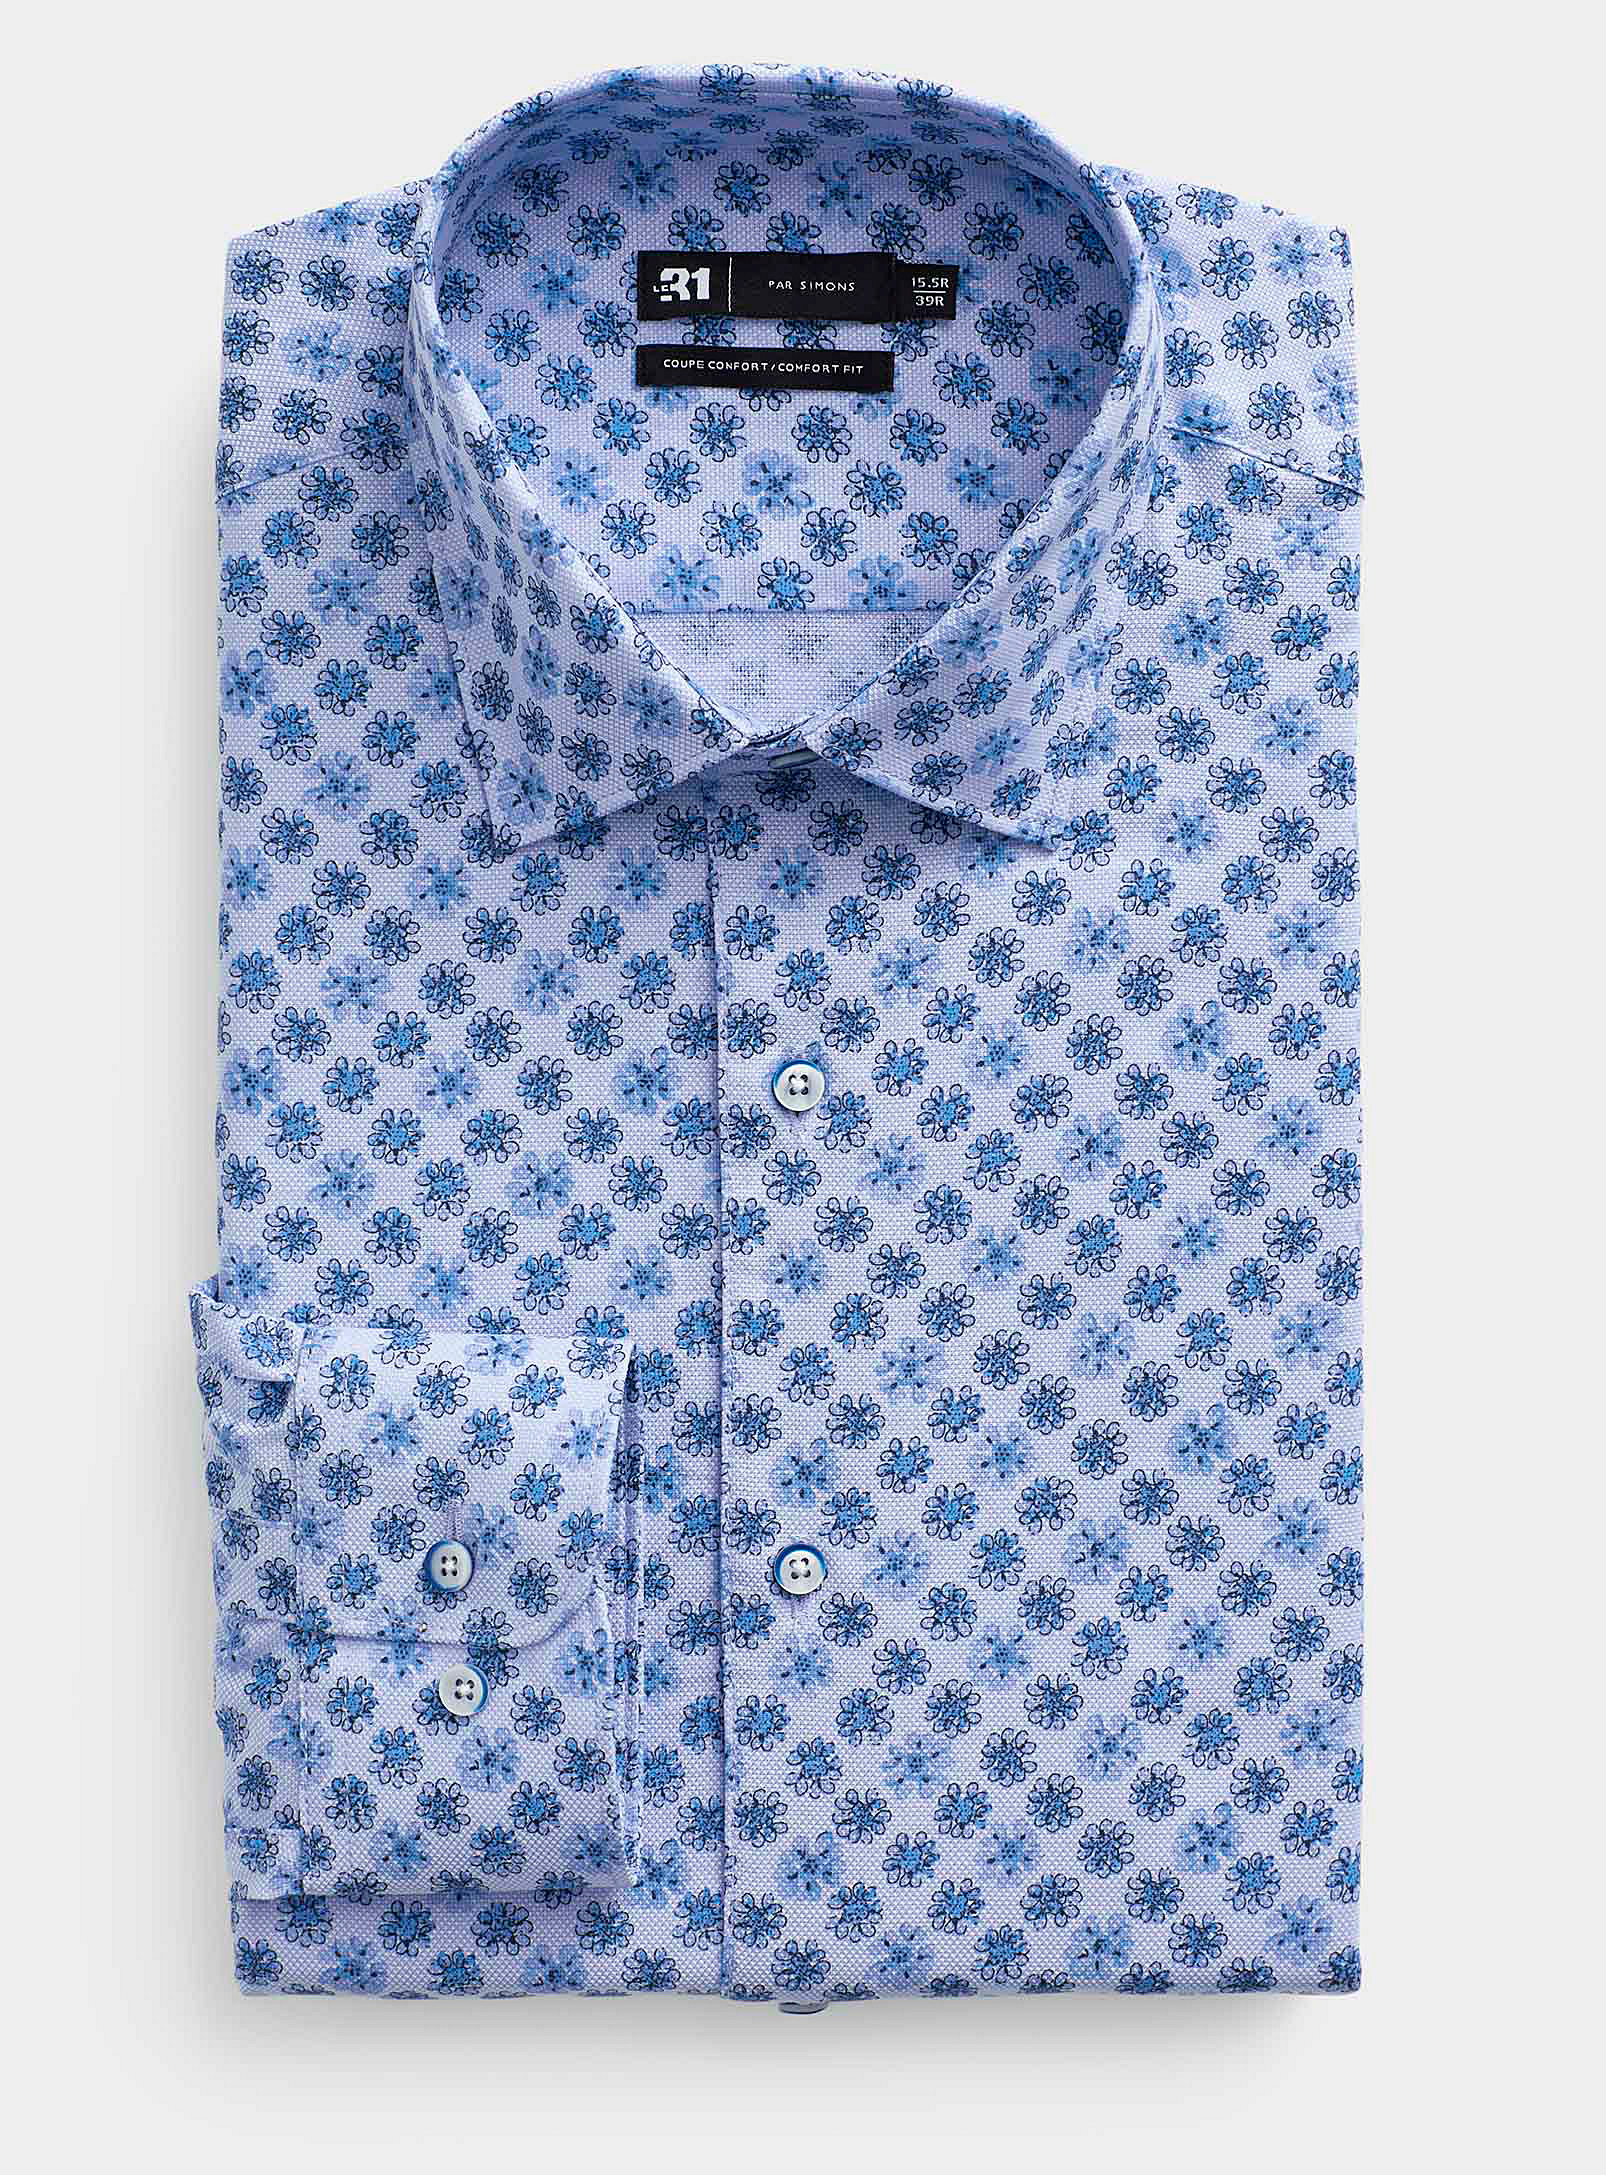 Le 31 - Men's Drawn floral textured shirt Comfort fit